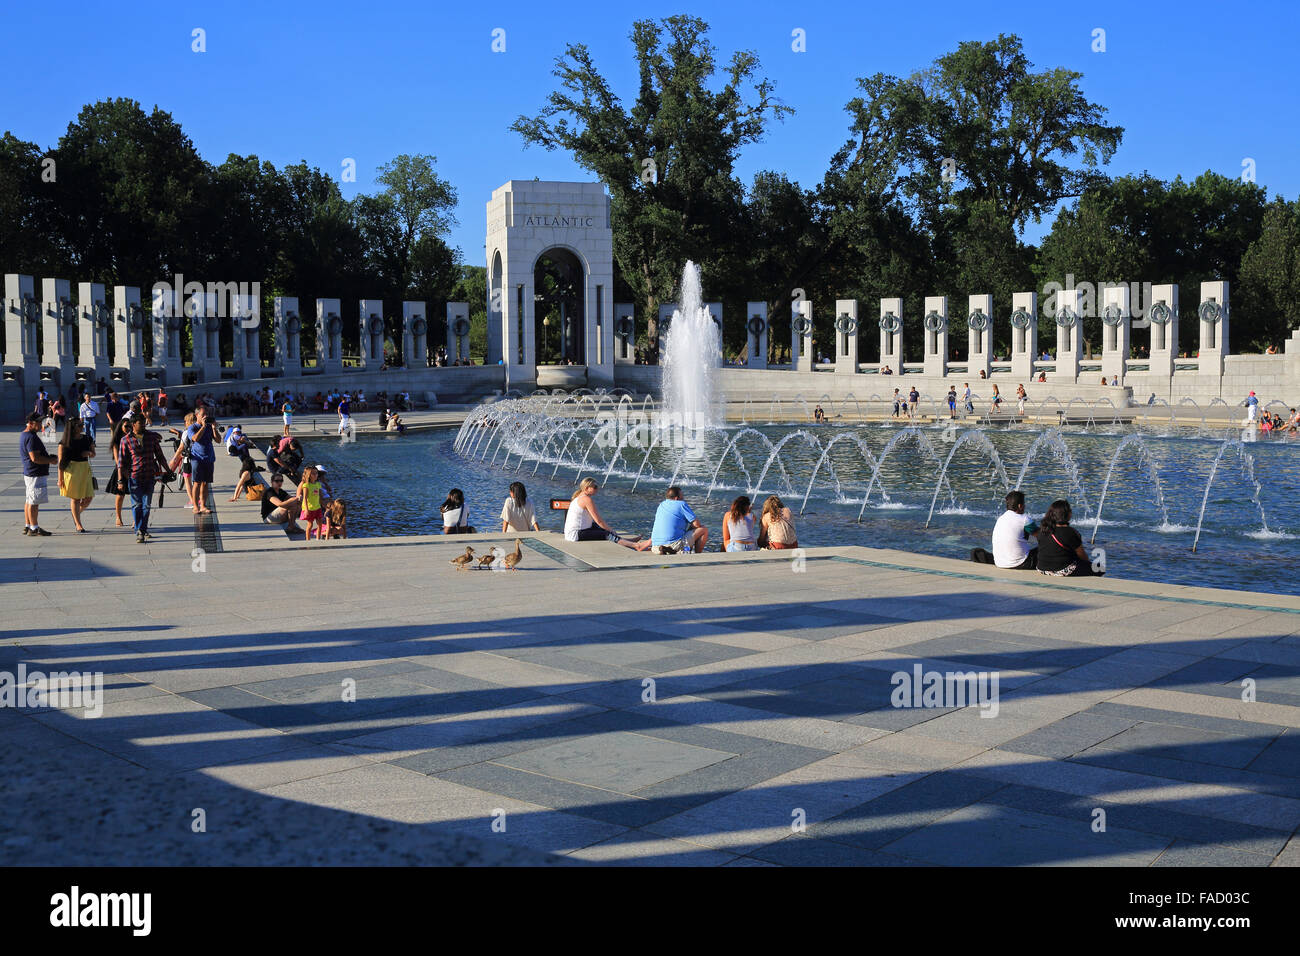 El Memorial de la Segunda Guerra Mundial, veterano estadounidense construido en honor a los soldados y civiles que murieron, en Washington DC, EE.UU. Foto de stock